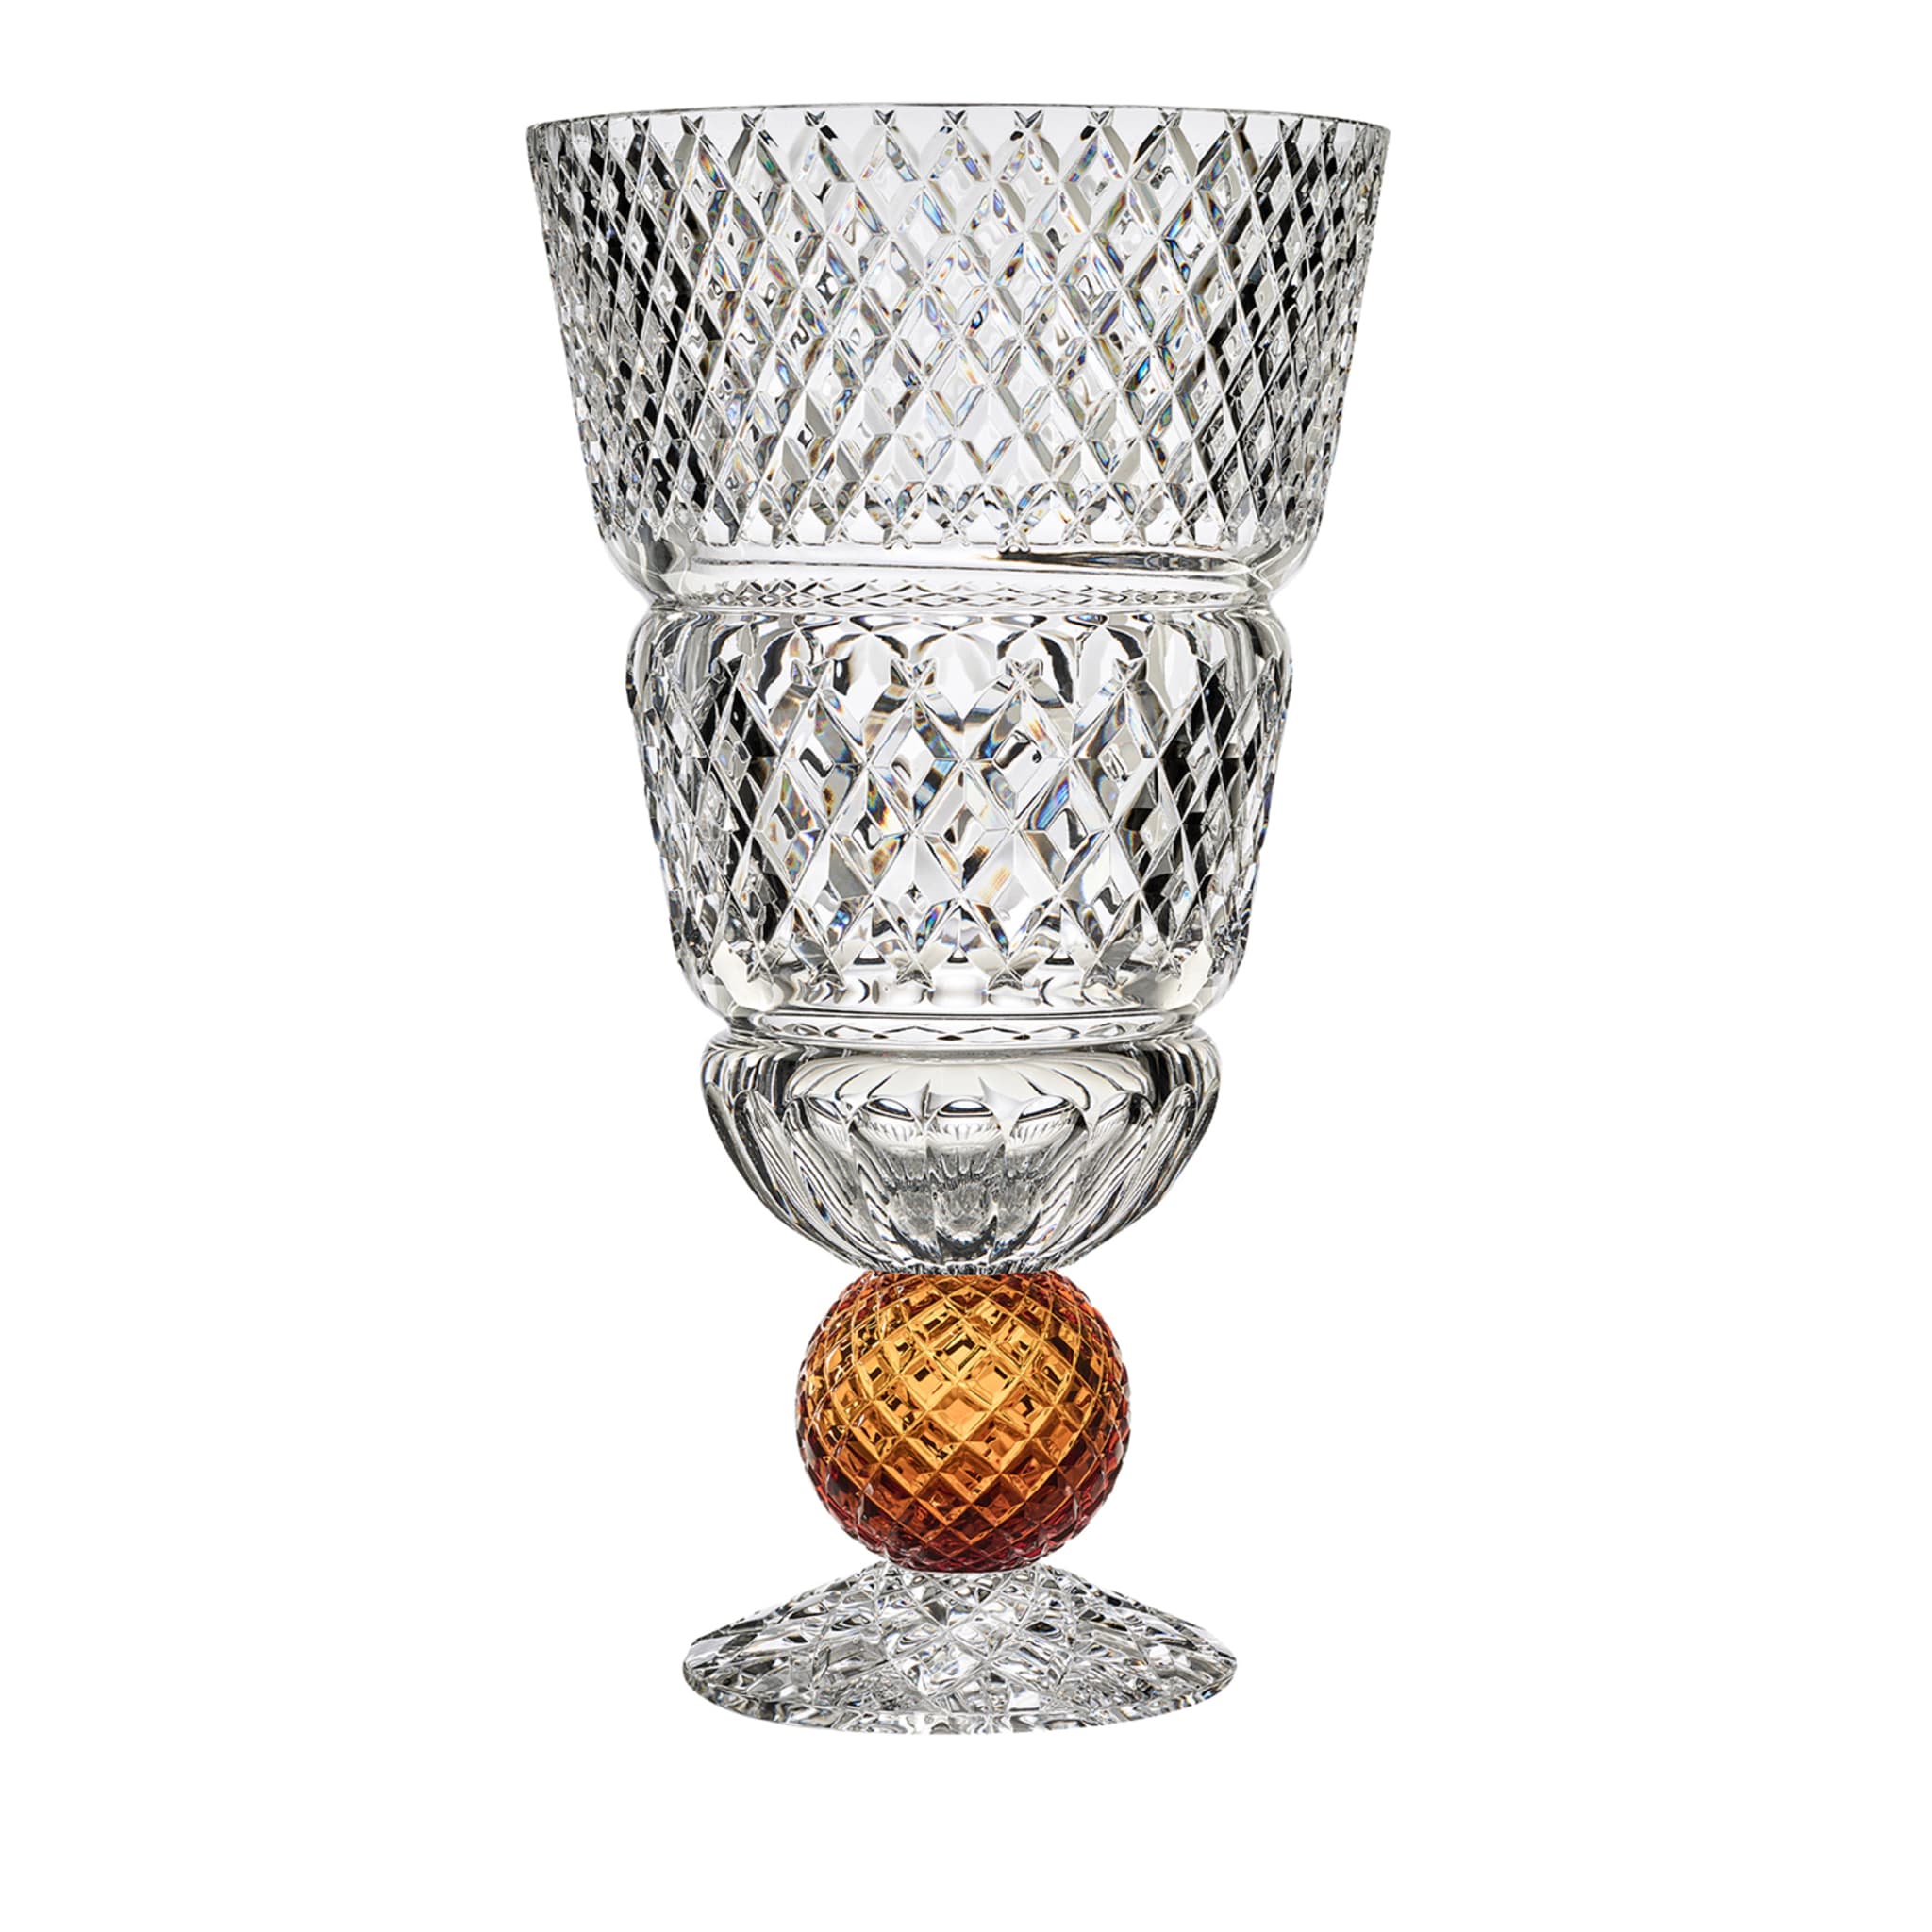 Grand vase conique Katherine avec sphère d'ambre - Vue principale